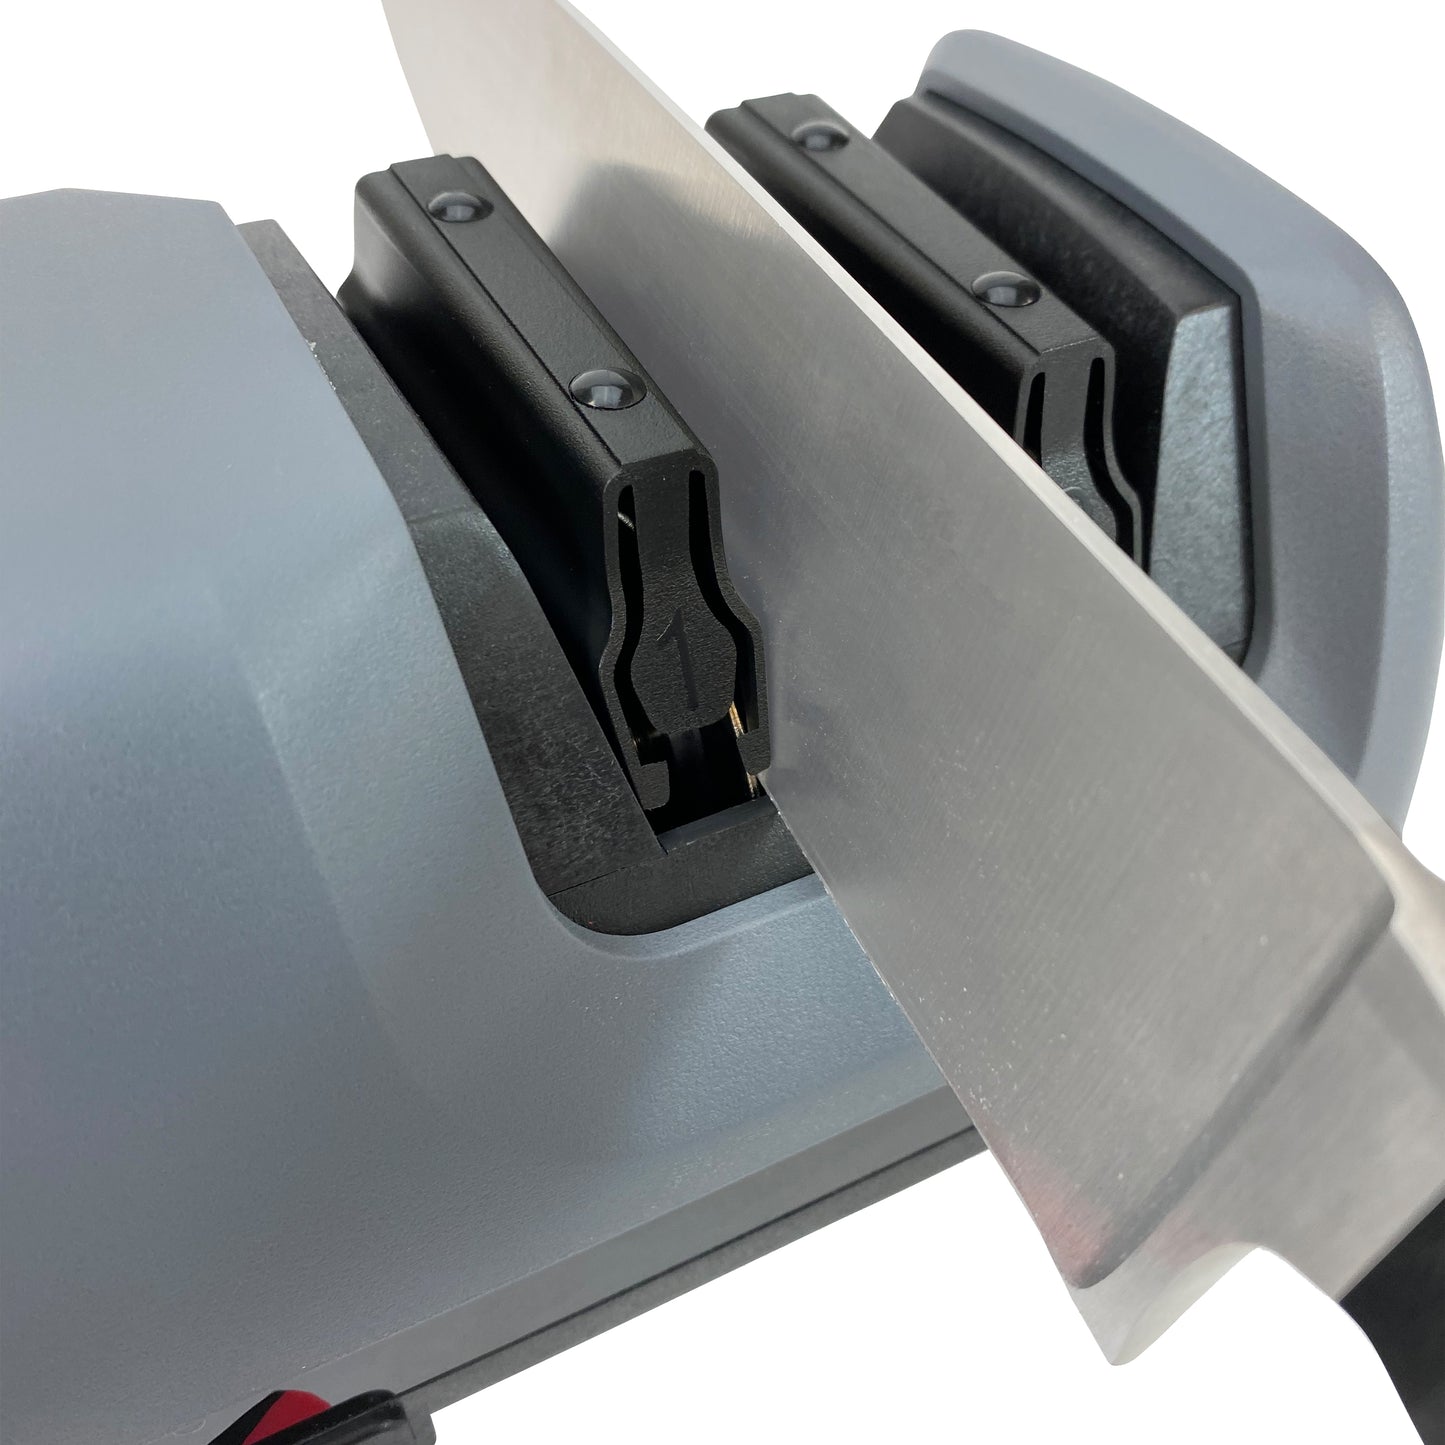 Wonderlife Electric Knife Sharpener Automatic Grinding Adjustable